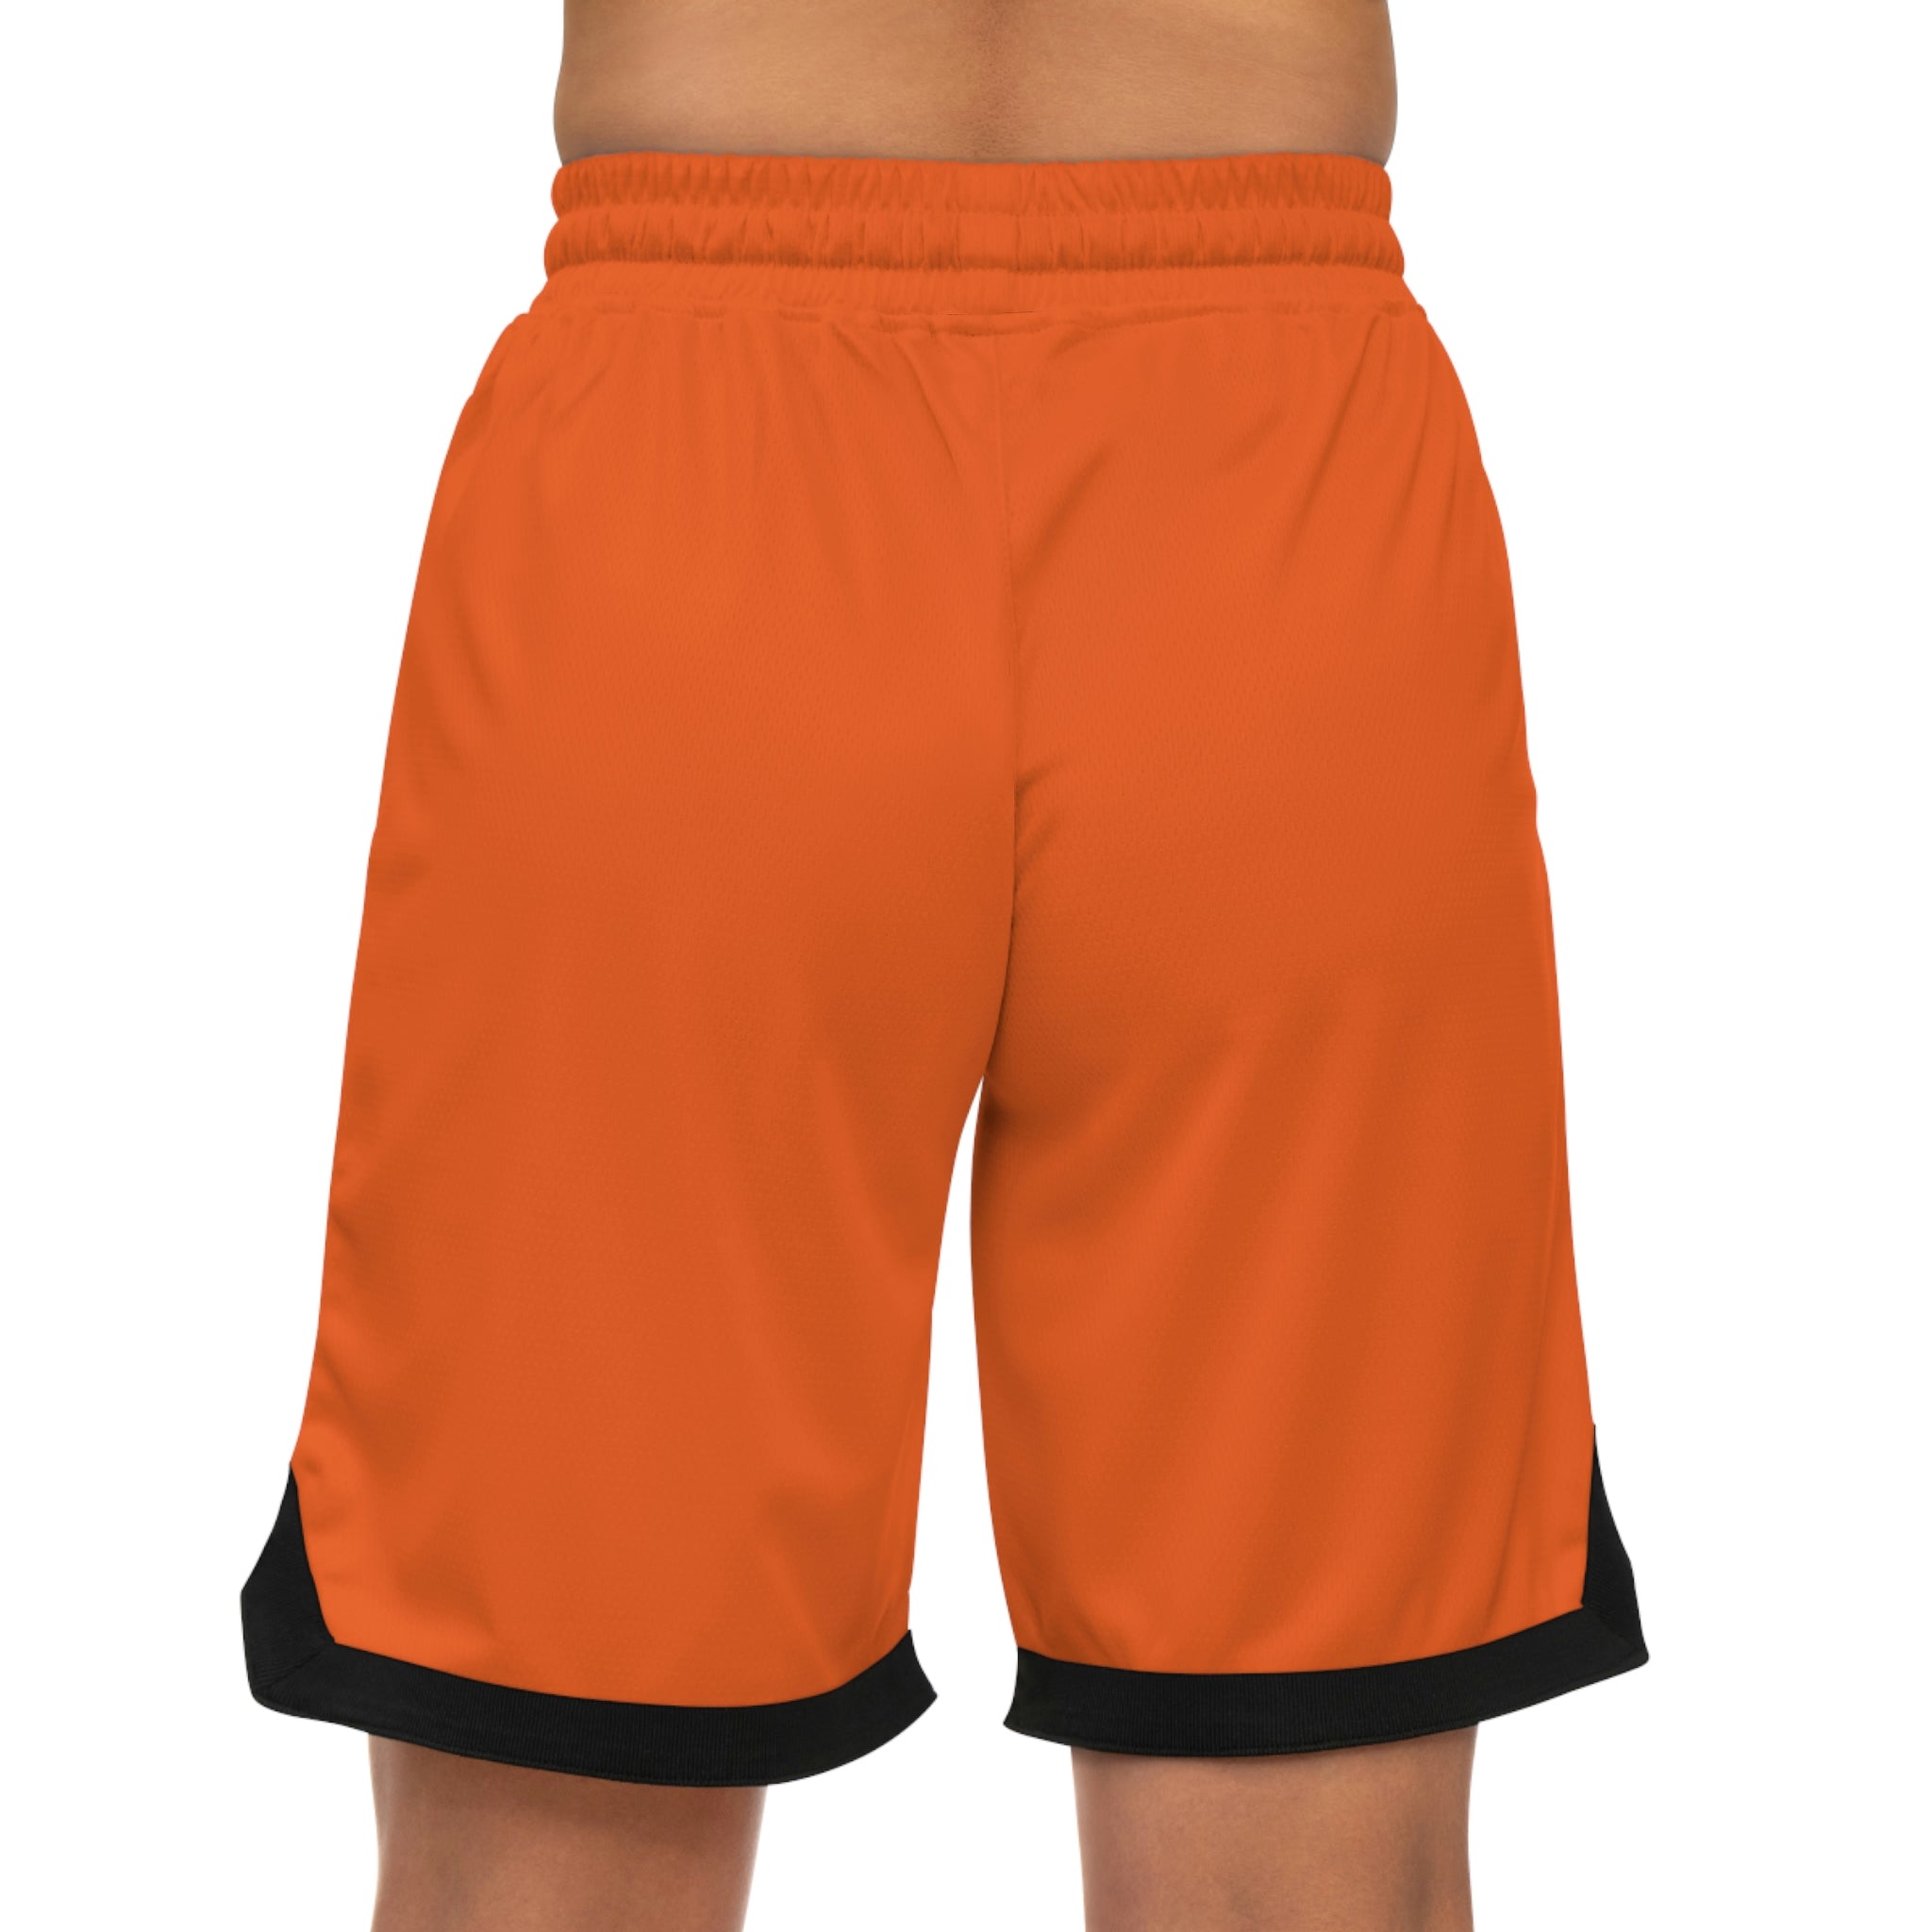 Combinedminds Basketball Shorts Orange/Black Logo